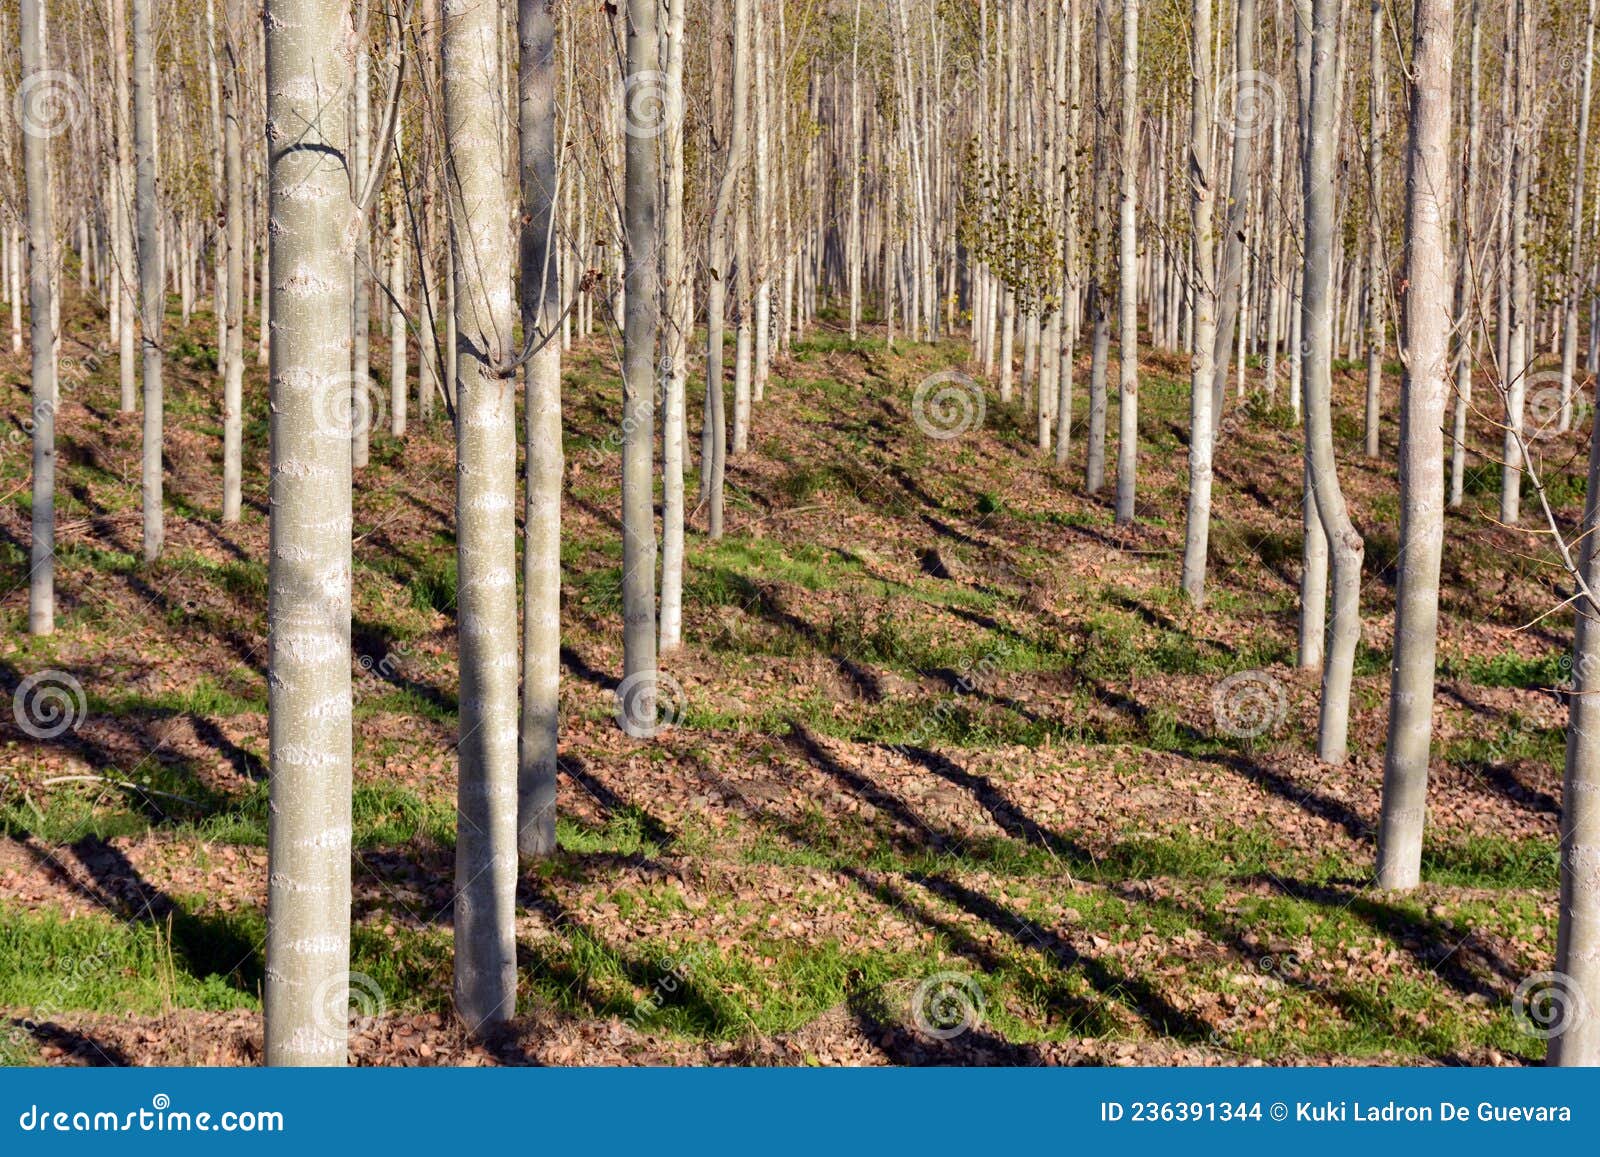 poplar forest in autumn